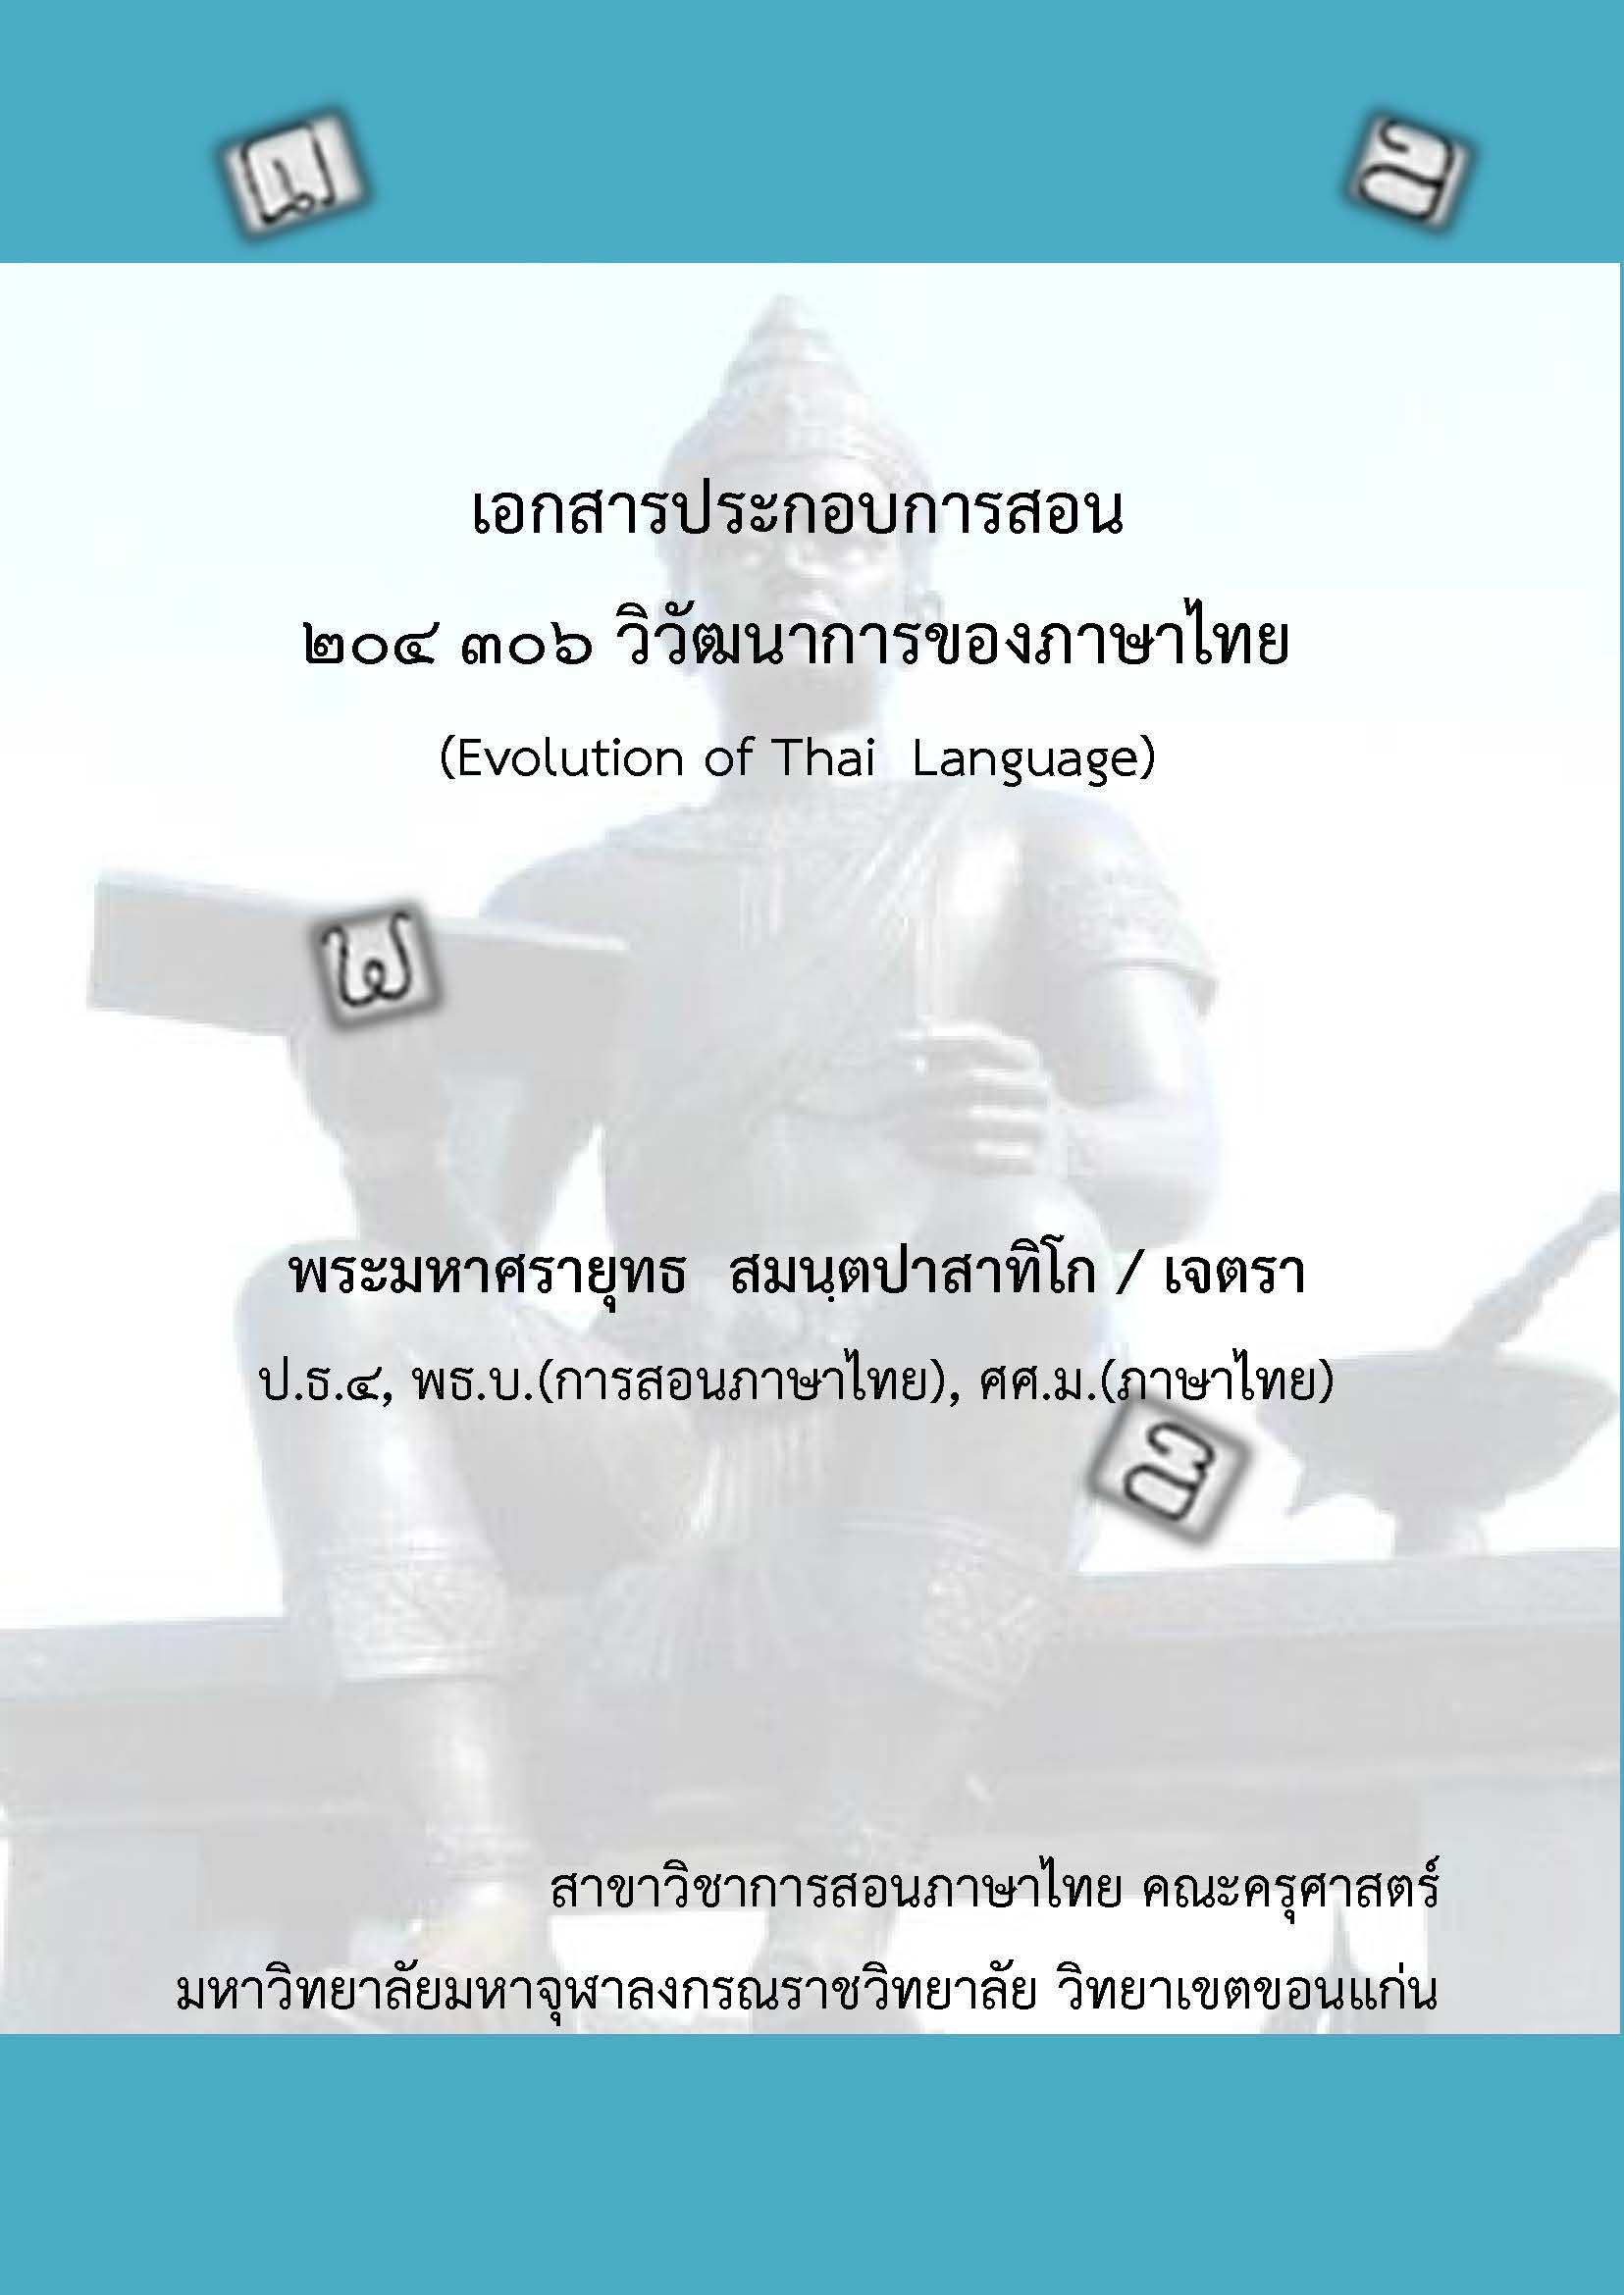 วิชาวิวัฒนาการของภาษาไทย (พม.ศรายุทธ-วข.ขอนแก่น)